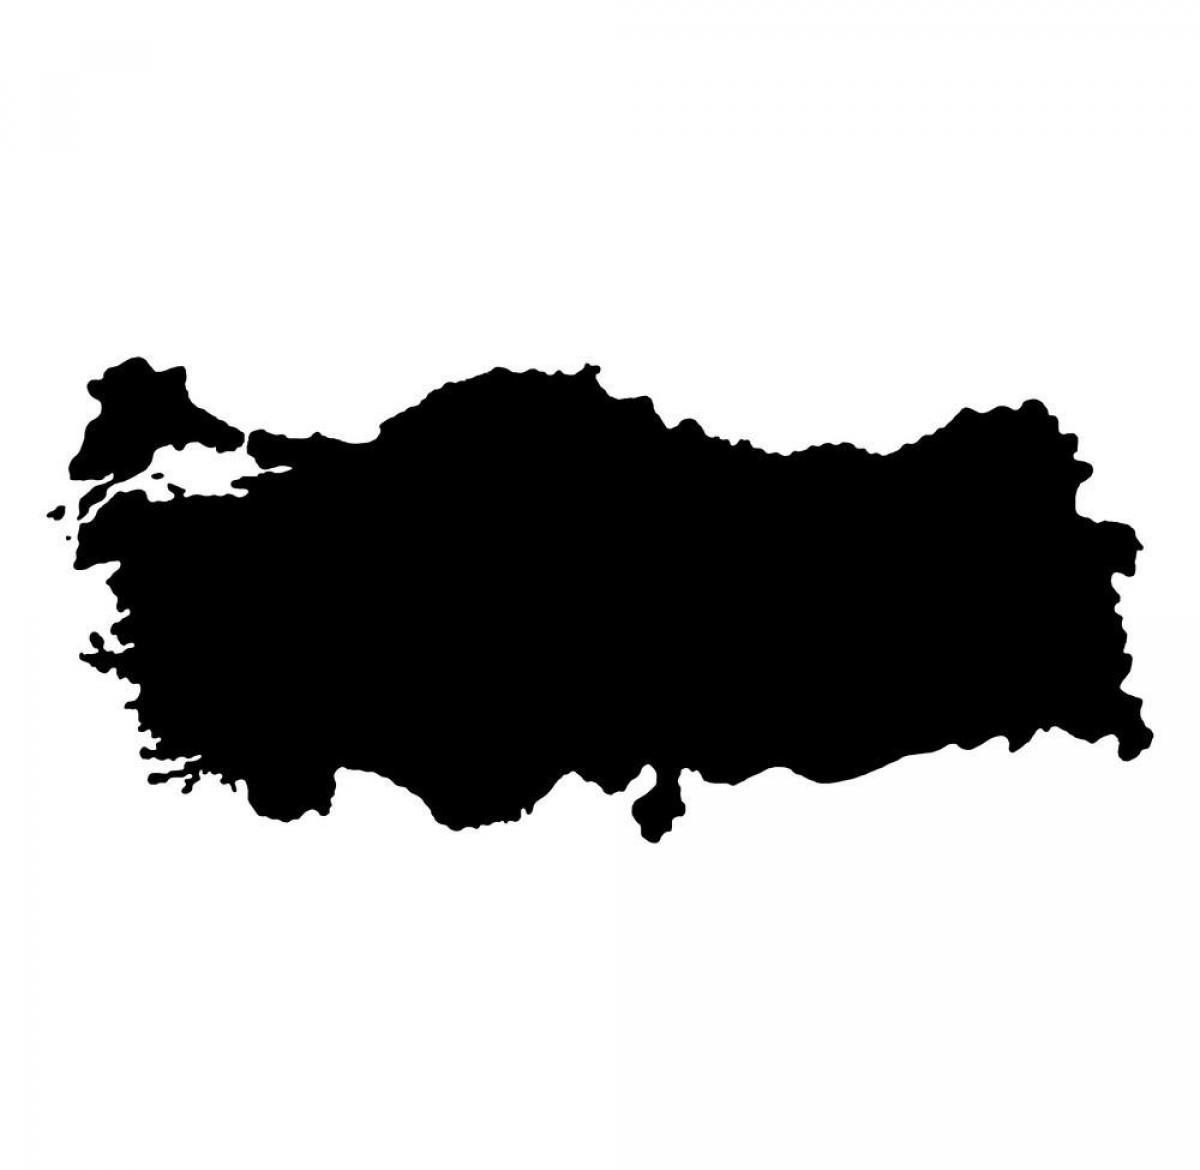 Mapa vetorial da Turquia